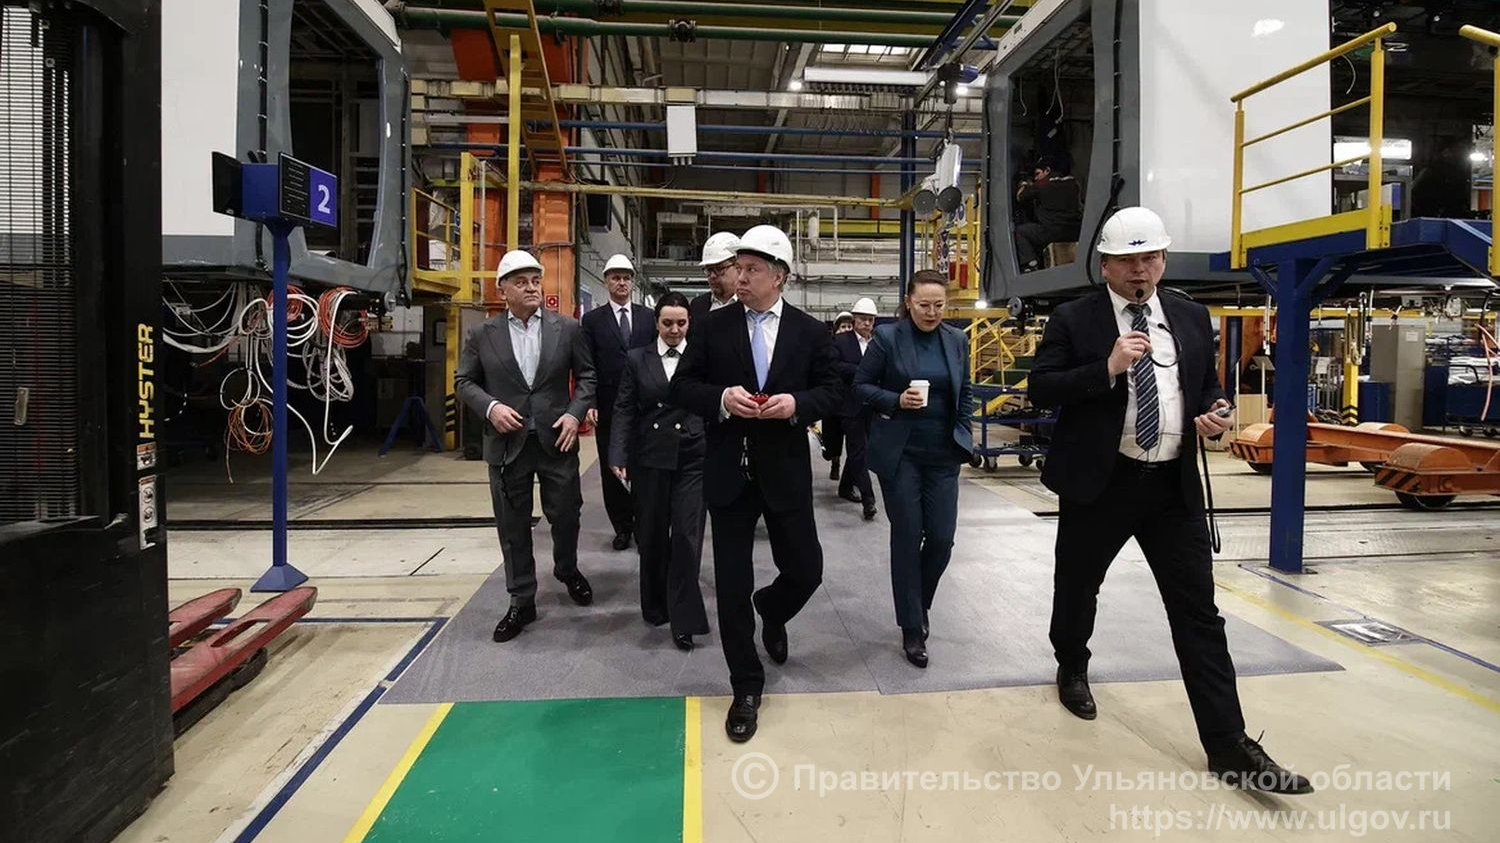 Ульяновская и Московская области намерены сотрудничать в станко-, приборостроении, металлообработке и авиастроении